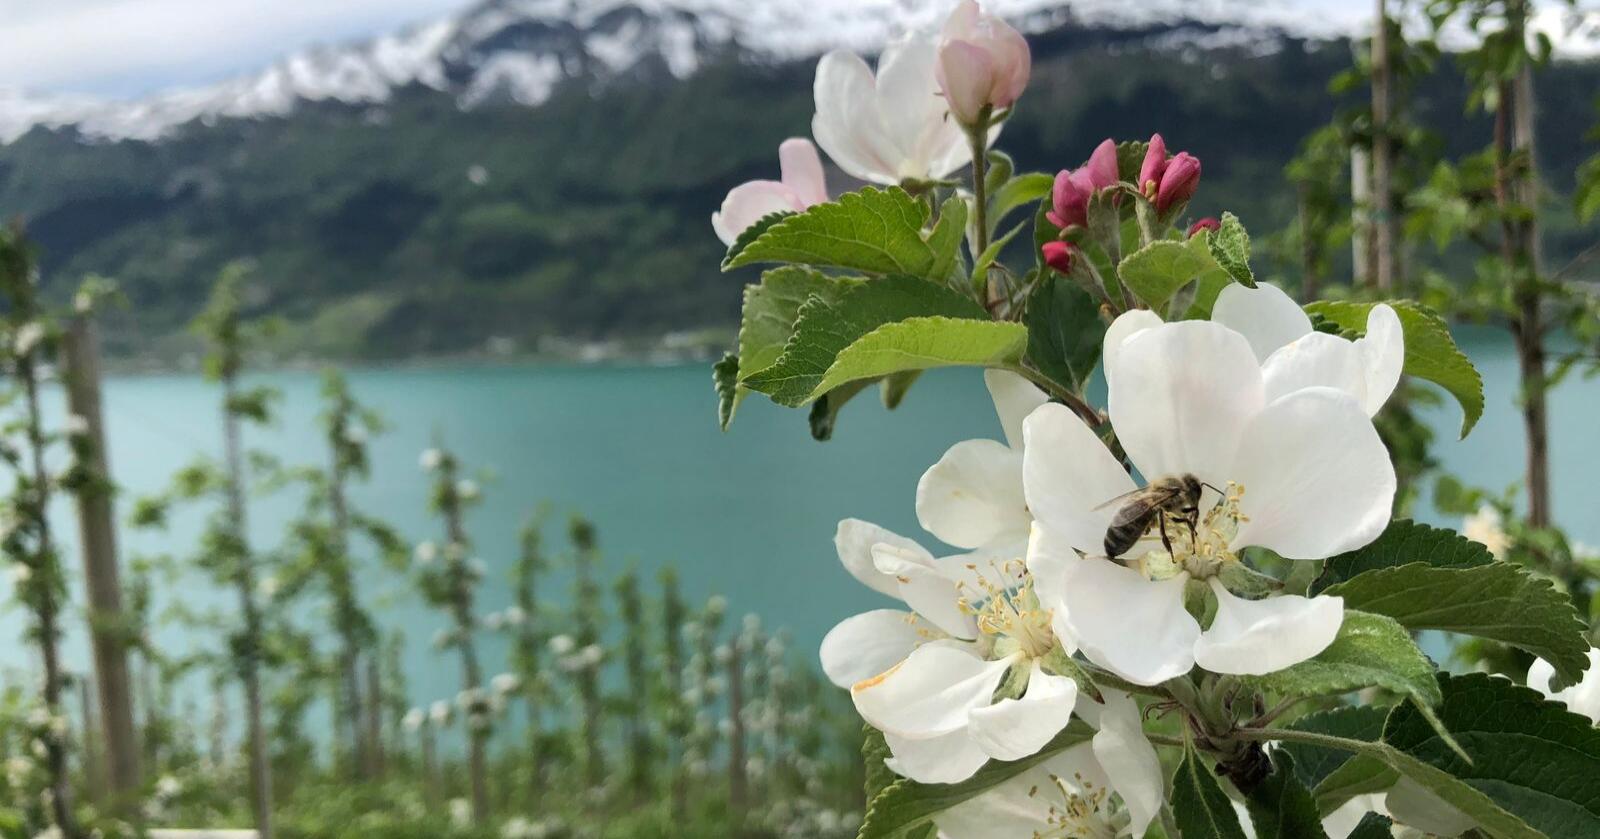 Vil epledyrkerne i Hardanger bruke Beskyttede betegnelser i sitt arbeid med bærekraft i fremtiden? spør kronikkforfatterne. Foto: Kjersti Kildahl